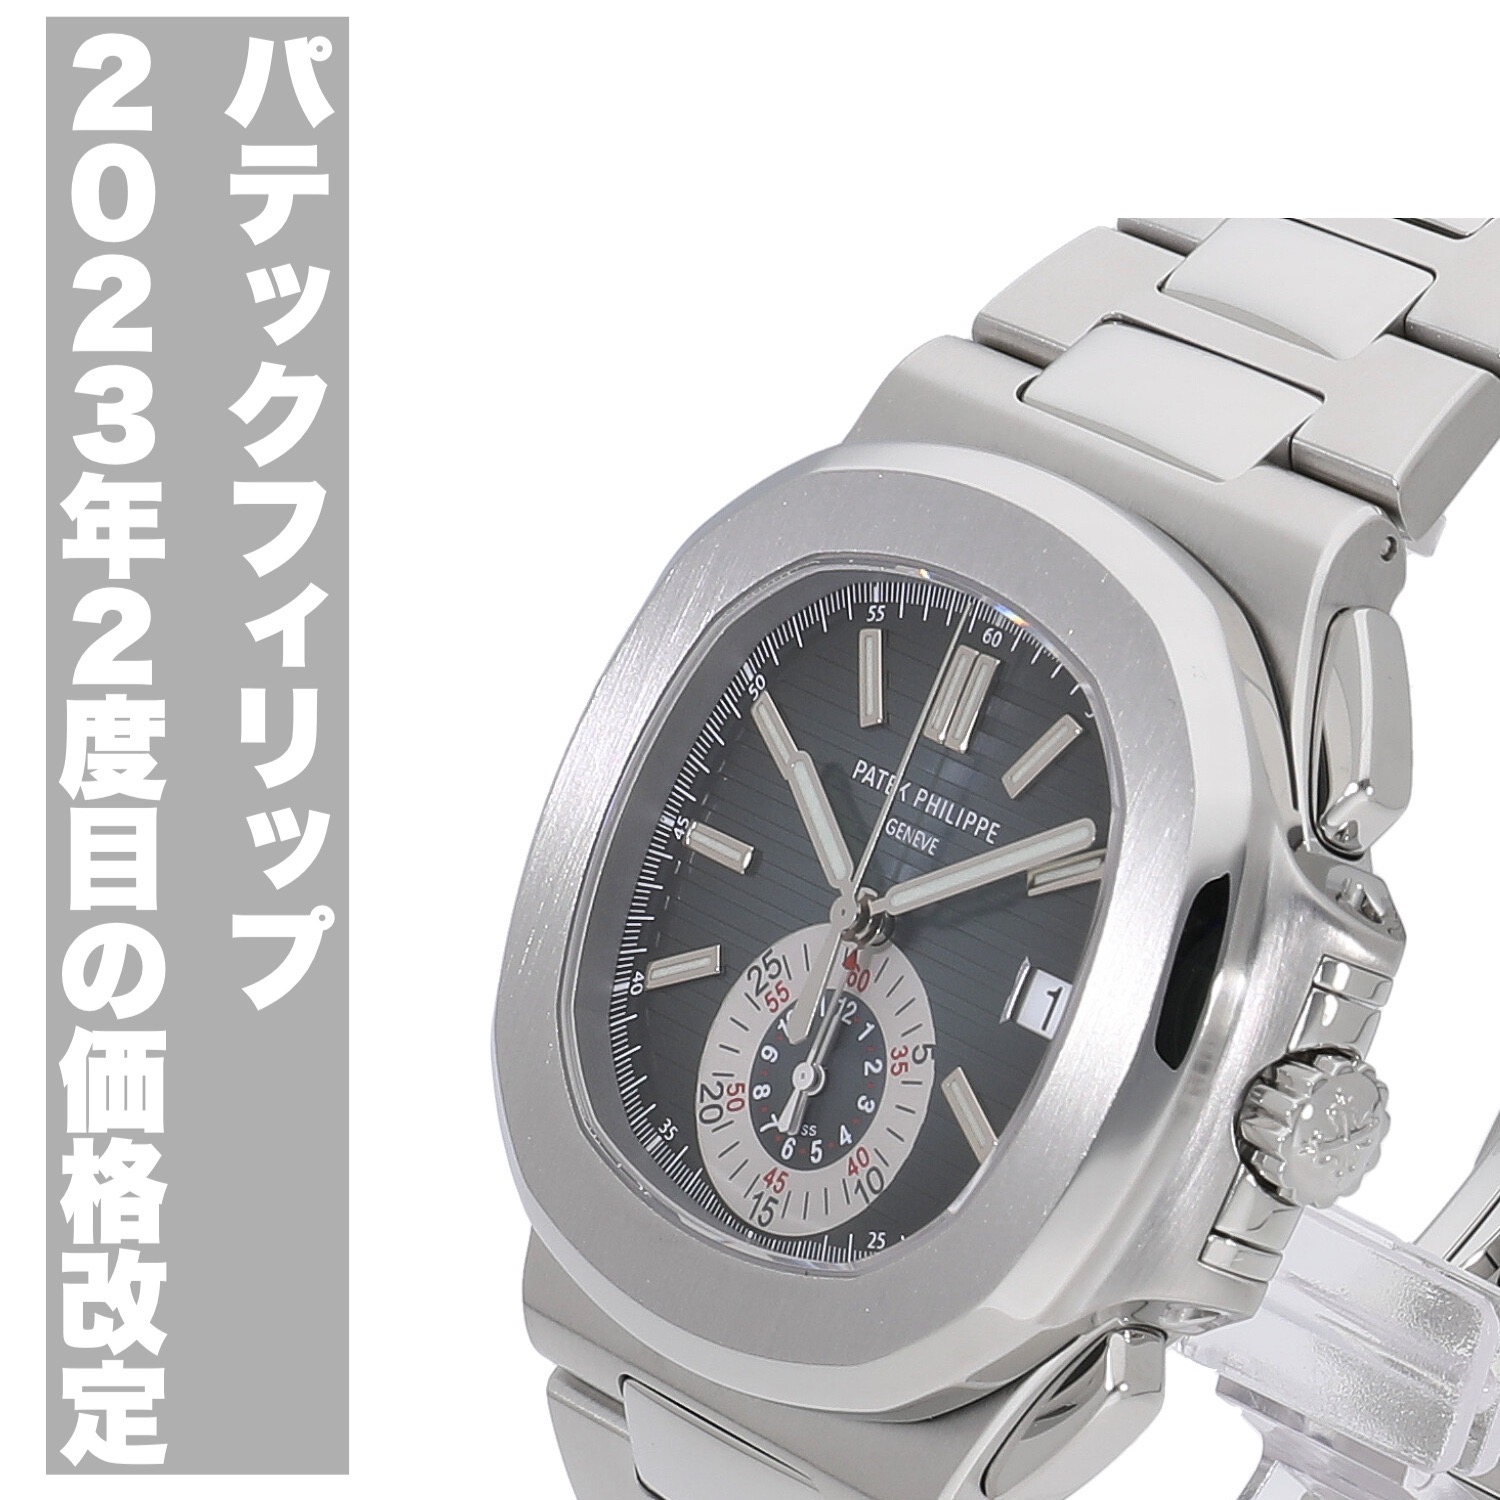 パテックフィリップ ブログ一覧 - ロレックスなど高級ブランド腕時計